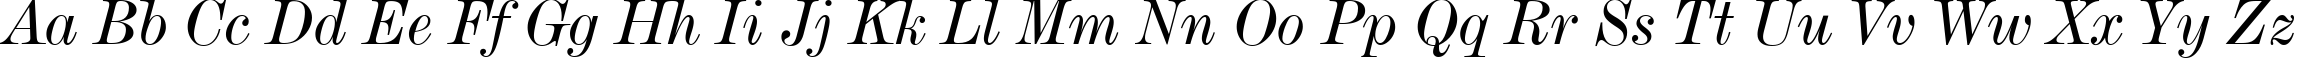 Пример написания английского алфавита шрифтом De Vinne Italic Text BT